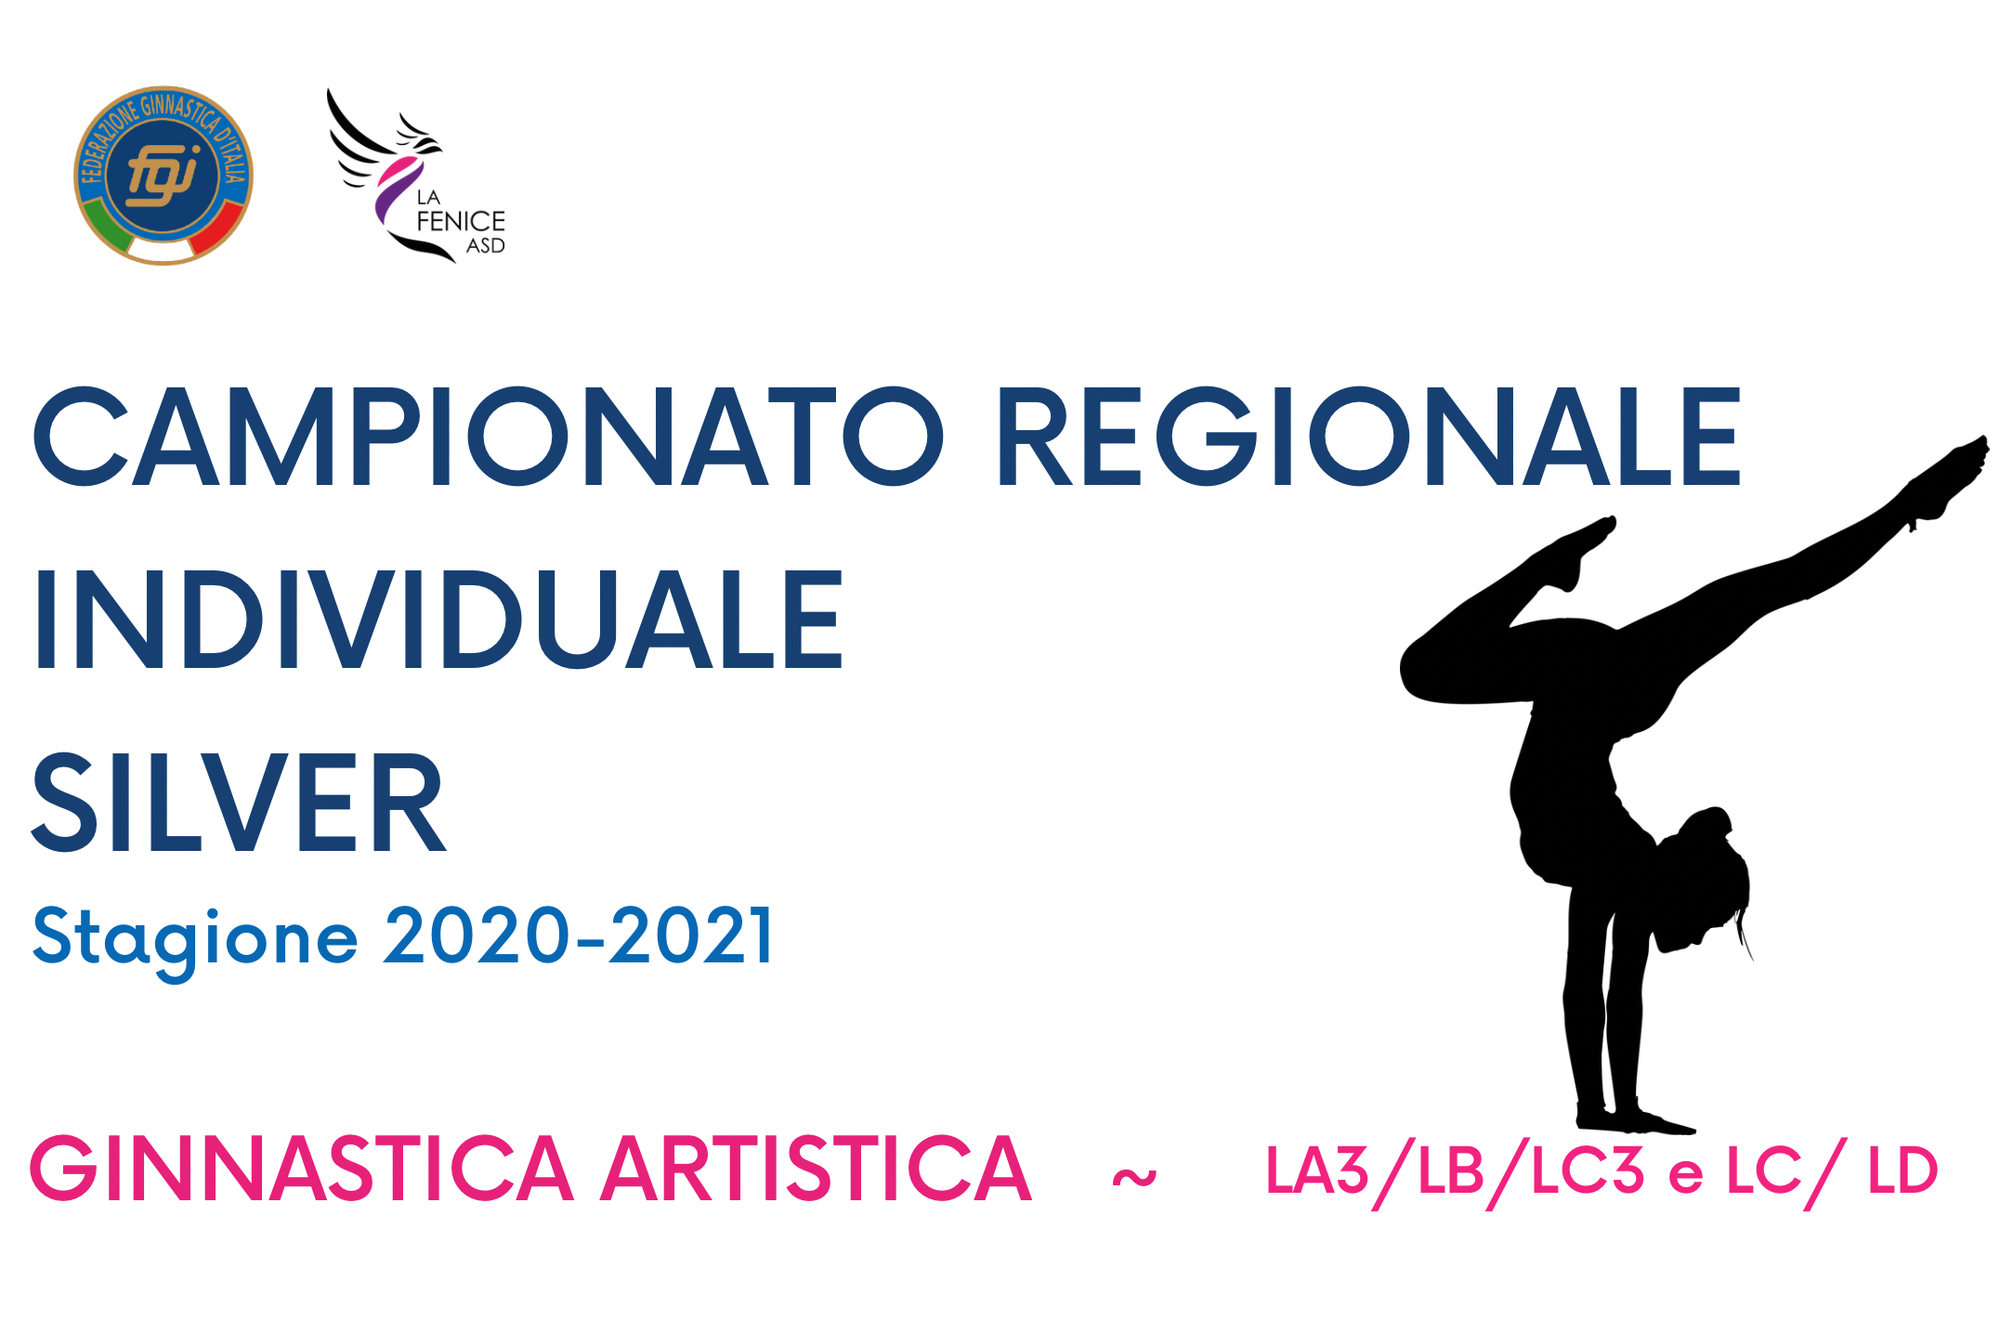 CAMPIONATO REGIONALE INDIVIDUALE SILVER 2021